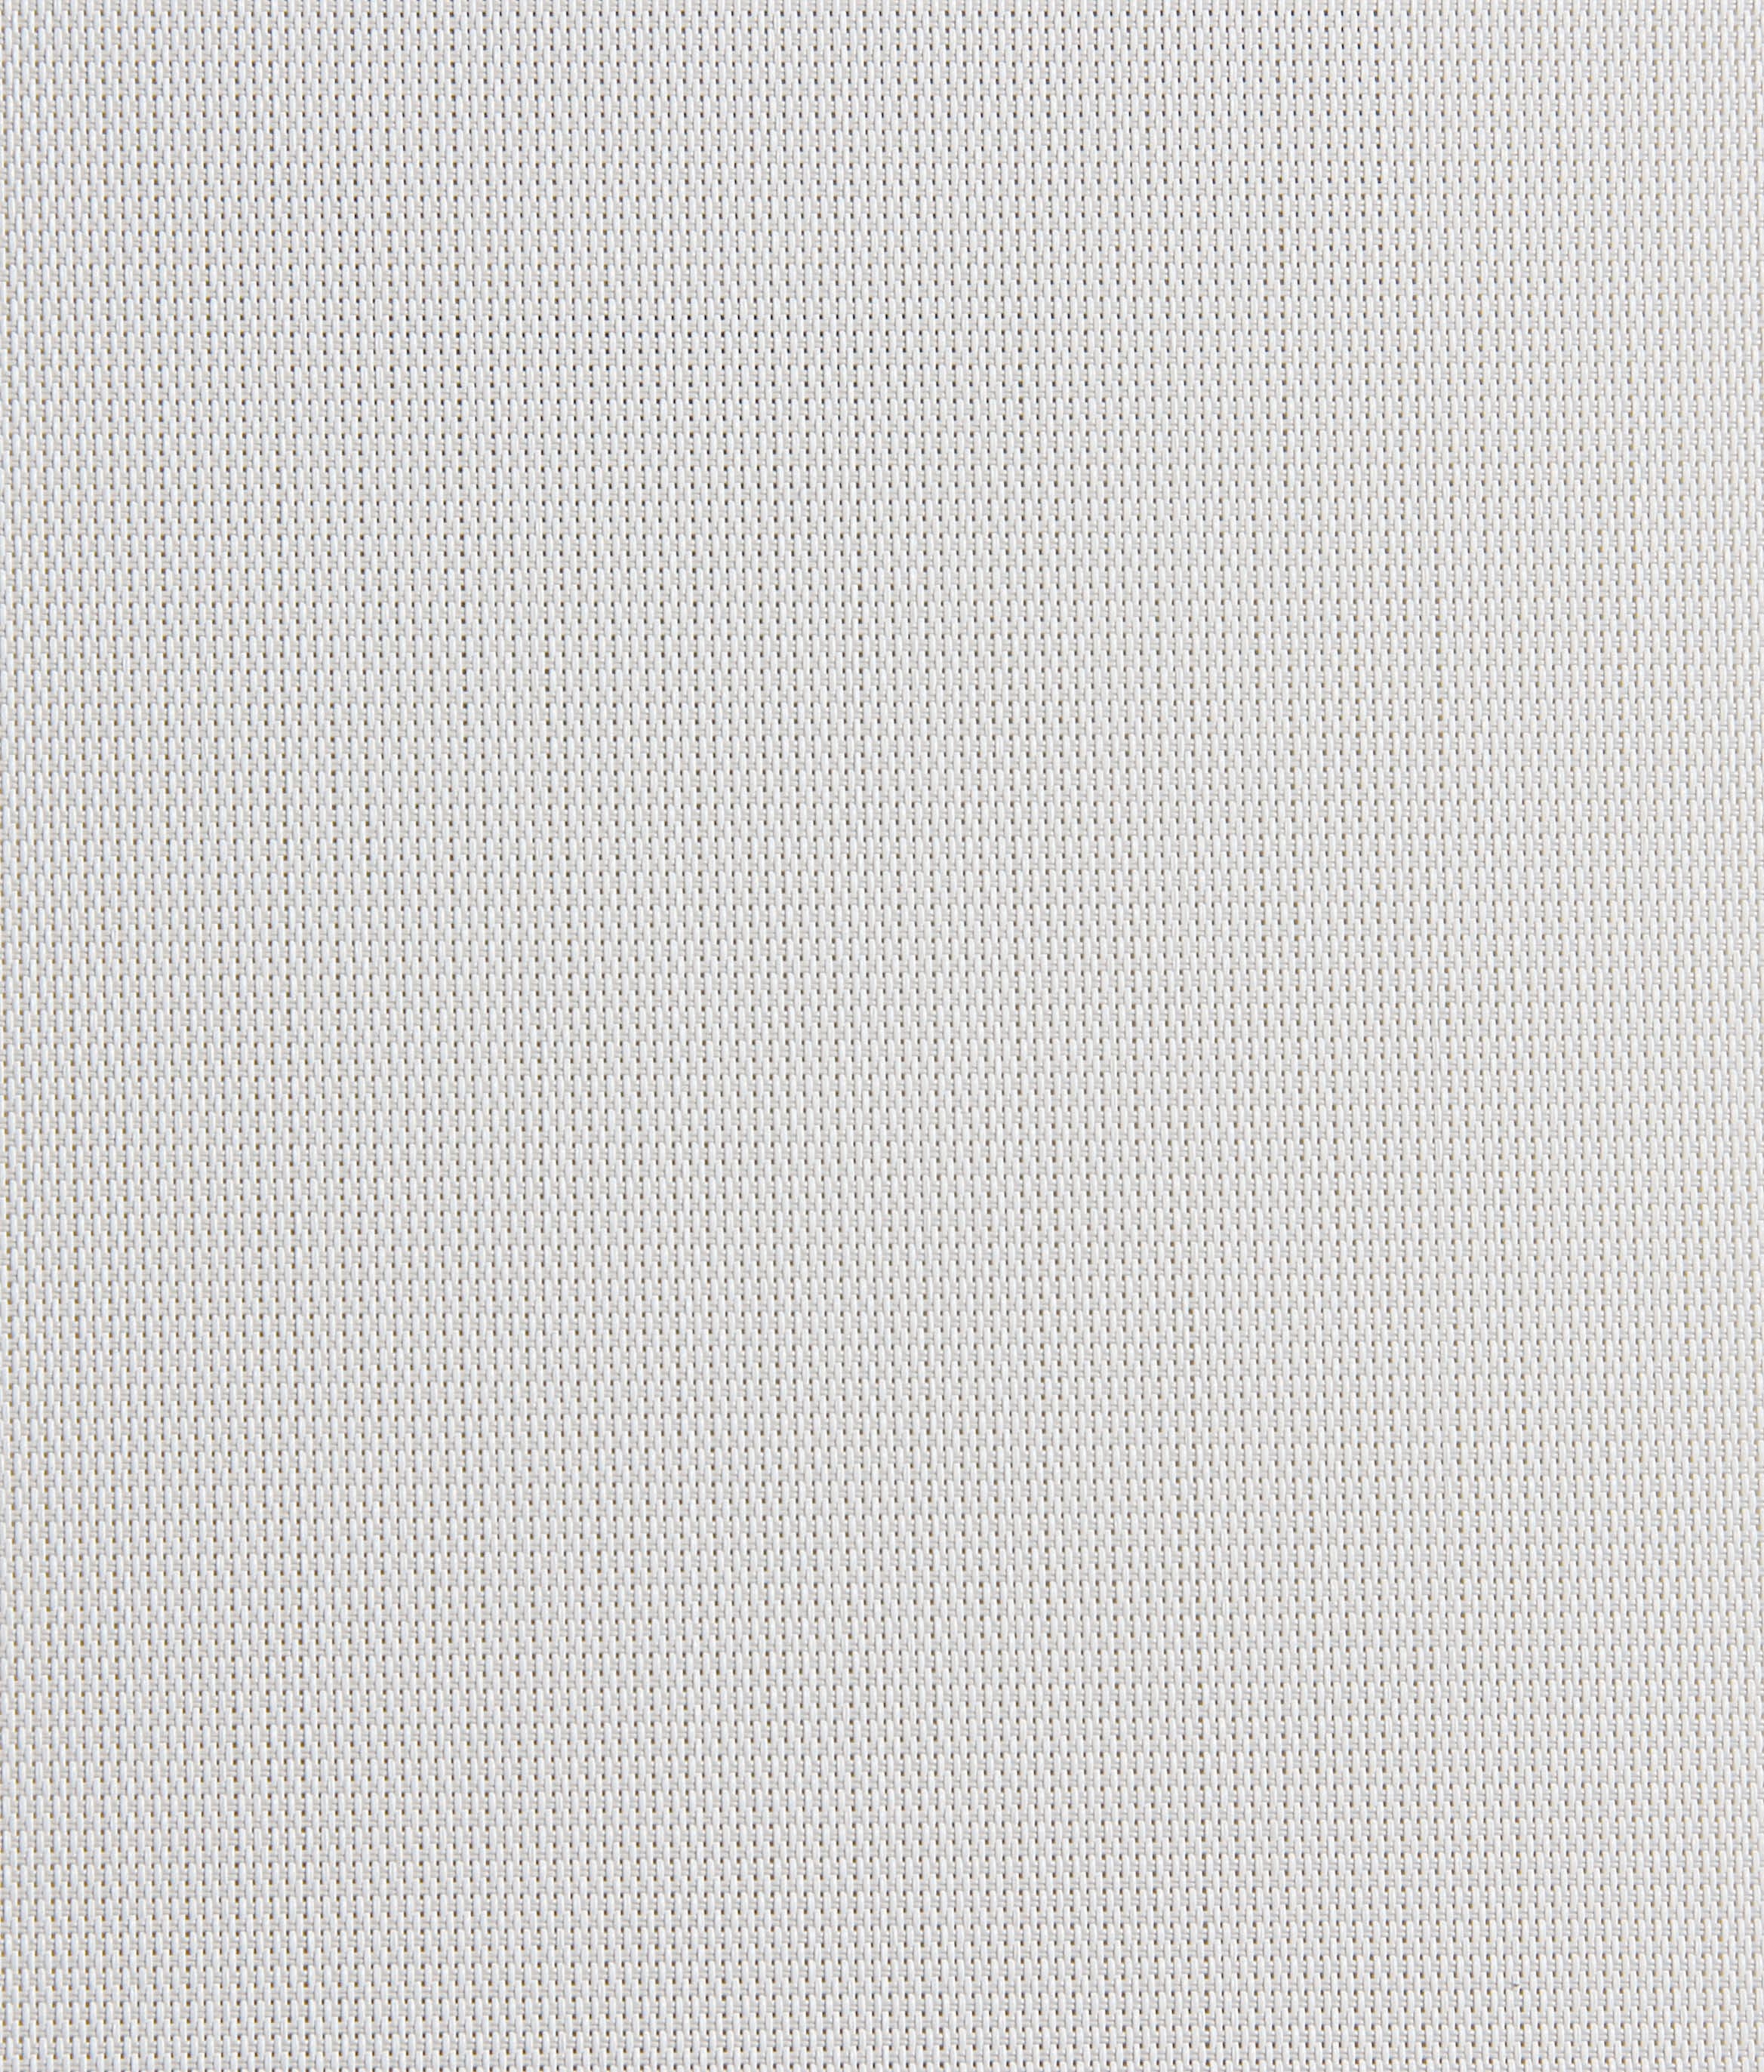 Sheerweave4300-white-Fabric.jpg